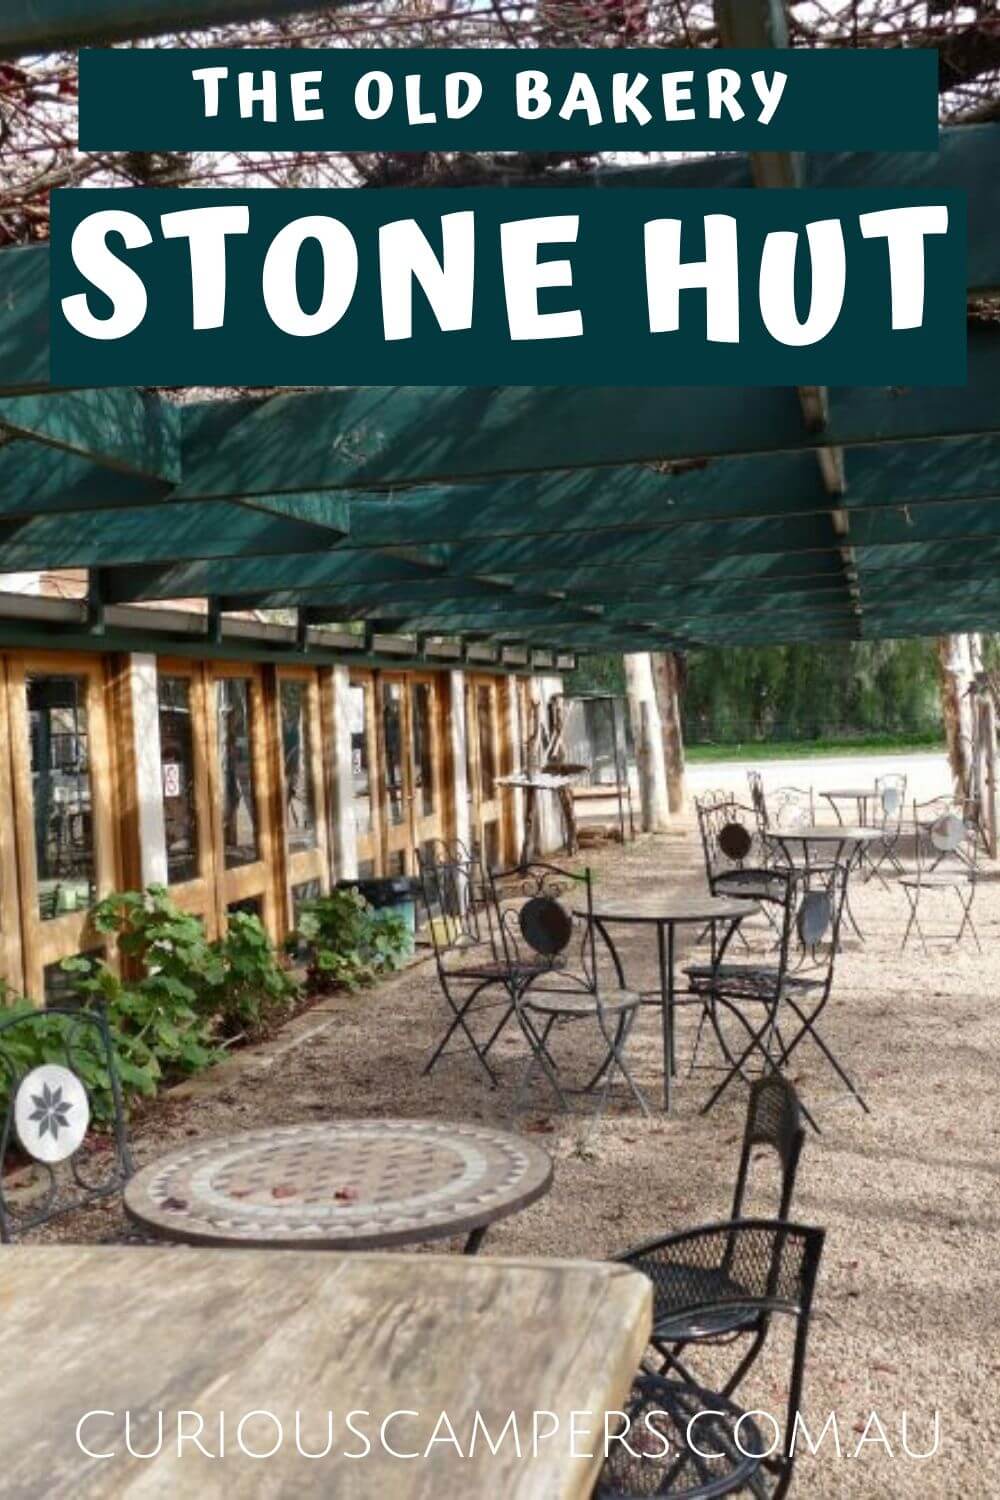 Stone Hut Bakery